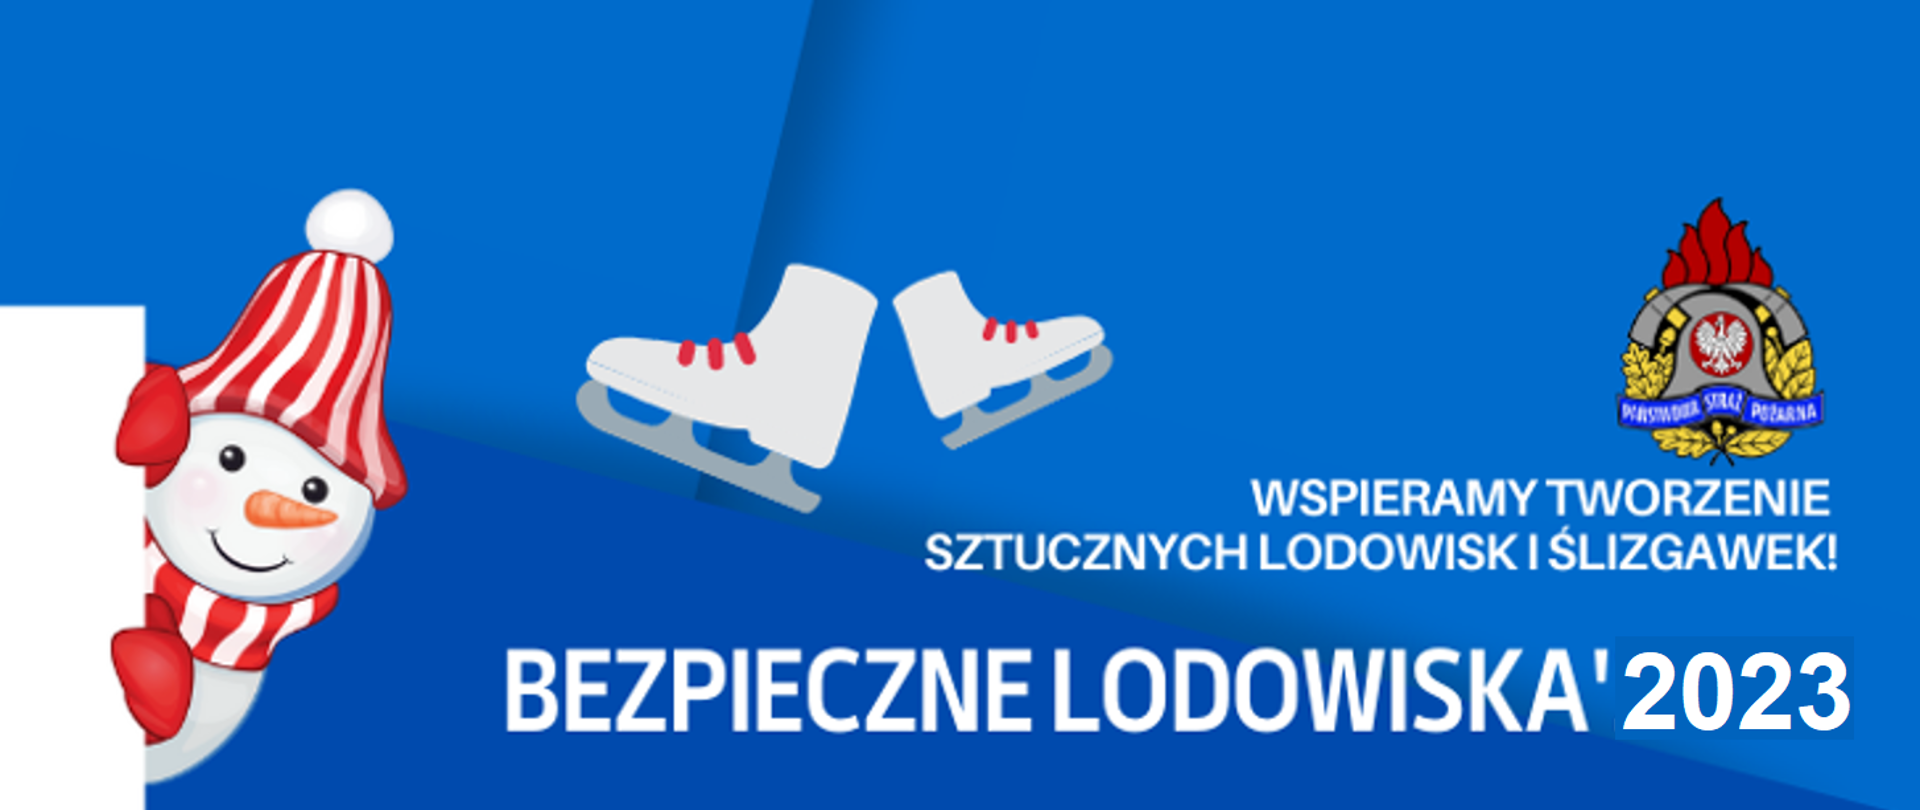 Zdjęcie przedstawia logo akcji bezpieczne lodowiska 2022 NA KTÓRYM WIDIMY LOGO PSP, BAŁWANA ORAZ ŁYŻWY.